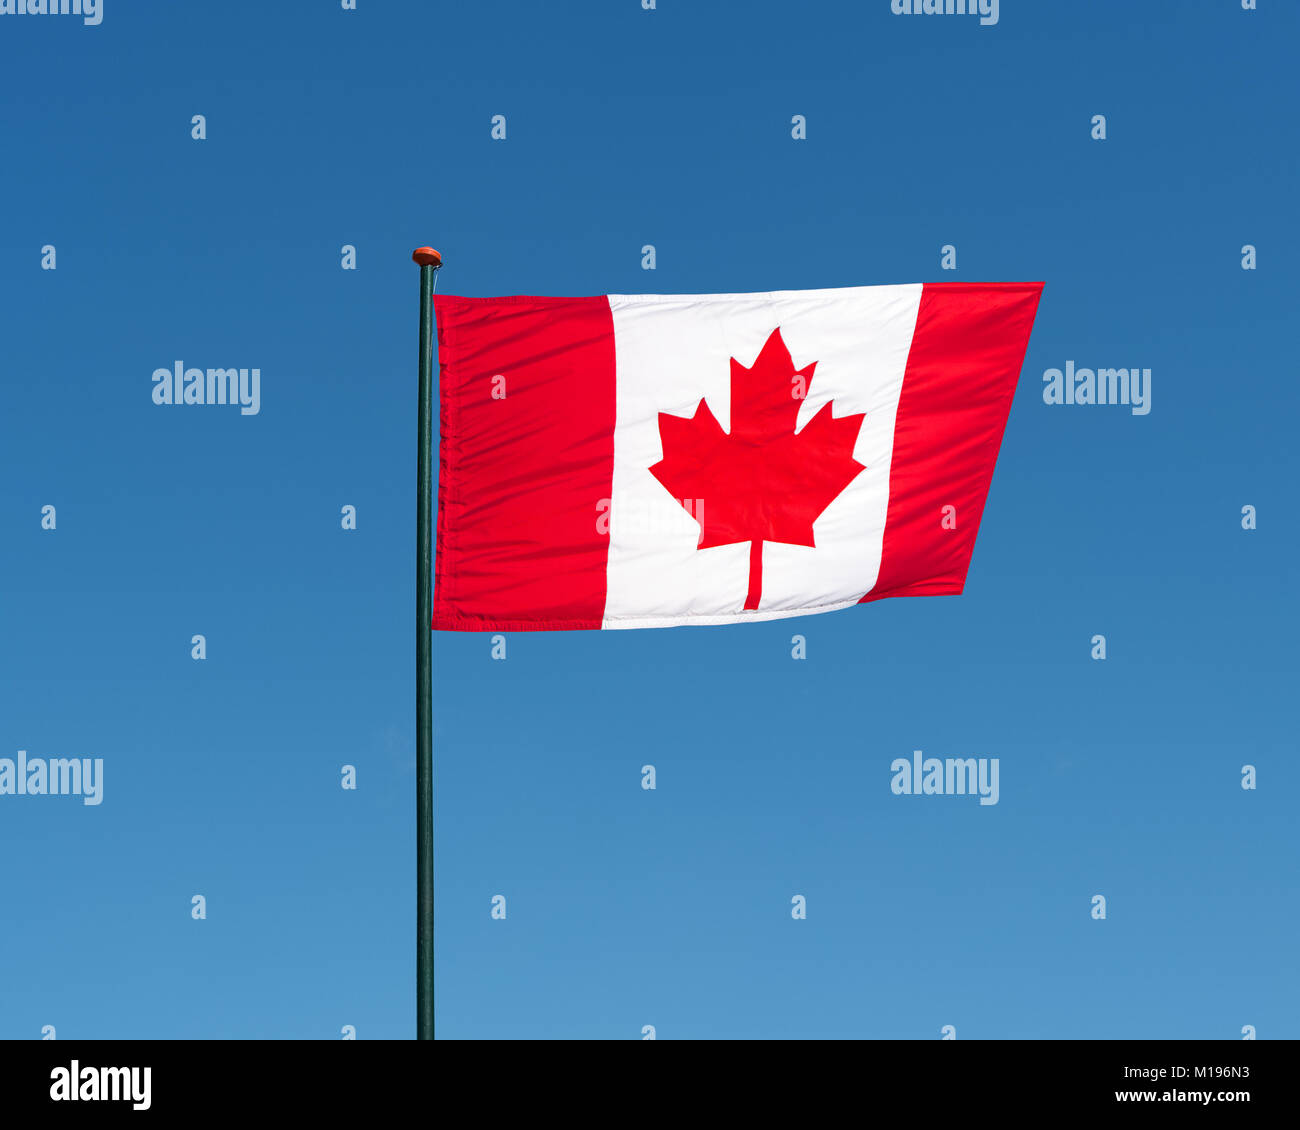 Bandera oficial nacional canadiense sobre fondo de cielo azul. Símbolo de Canadá. Bandera canadiense patriótica, diseño. Pabellón de Canadá sobre la bandera ondeando en el Foto de stock